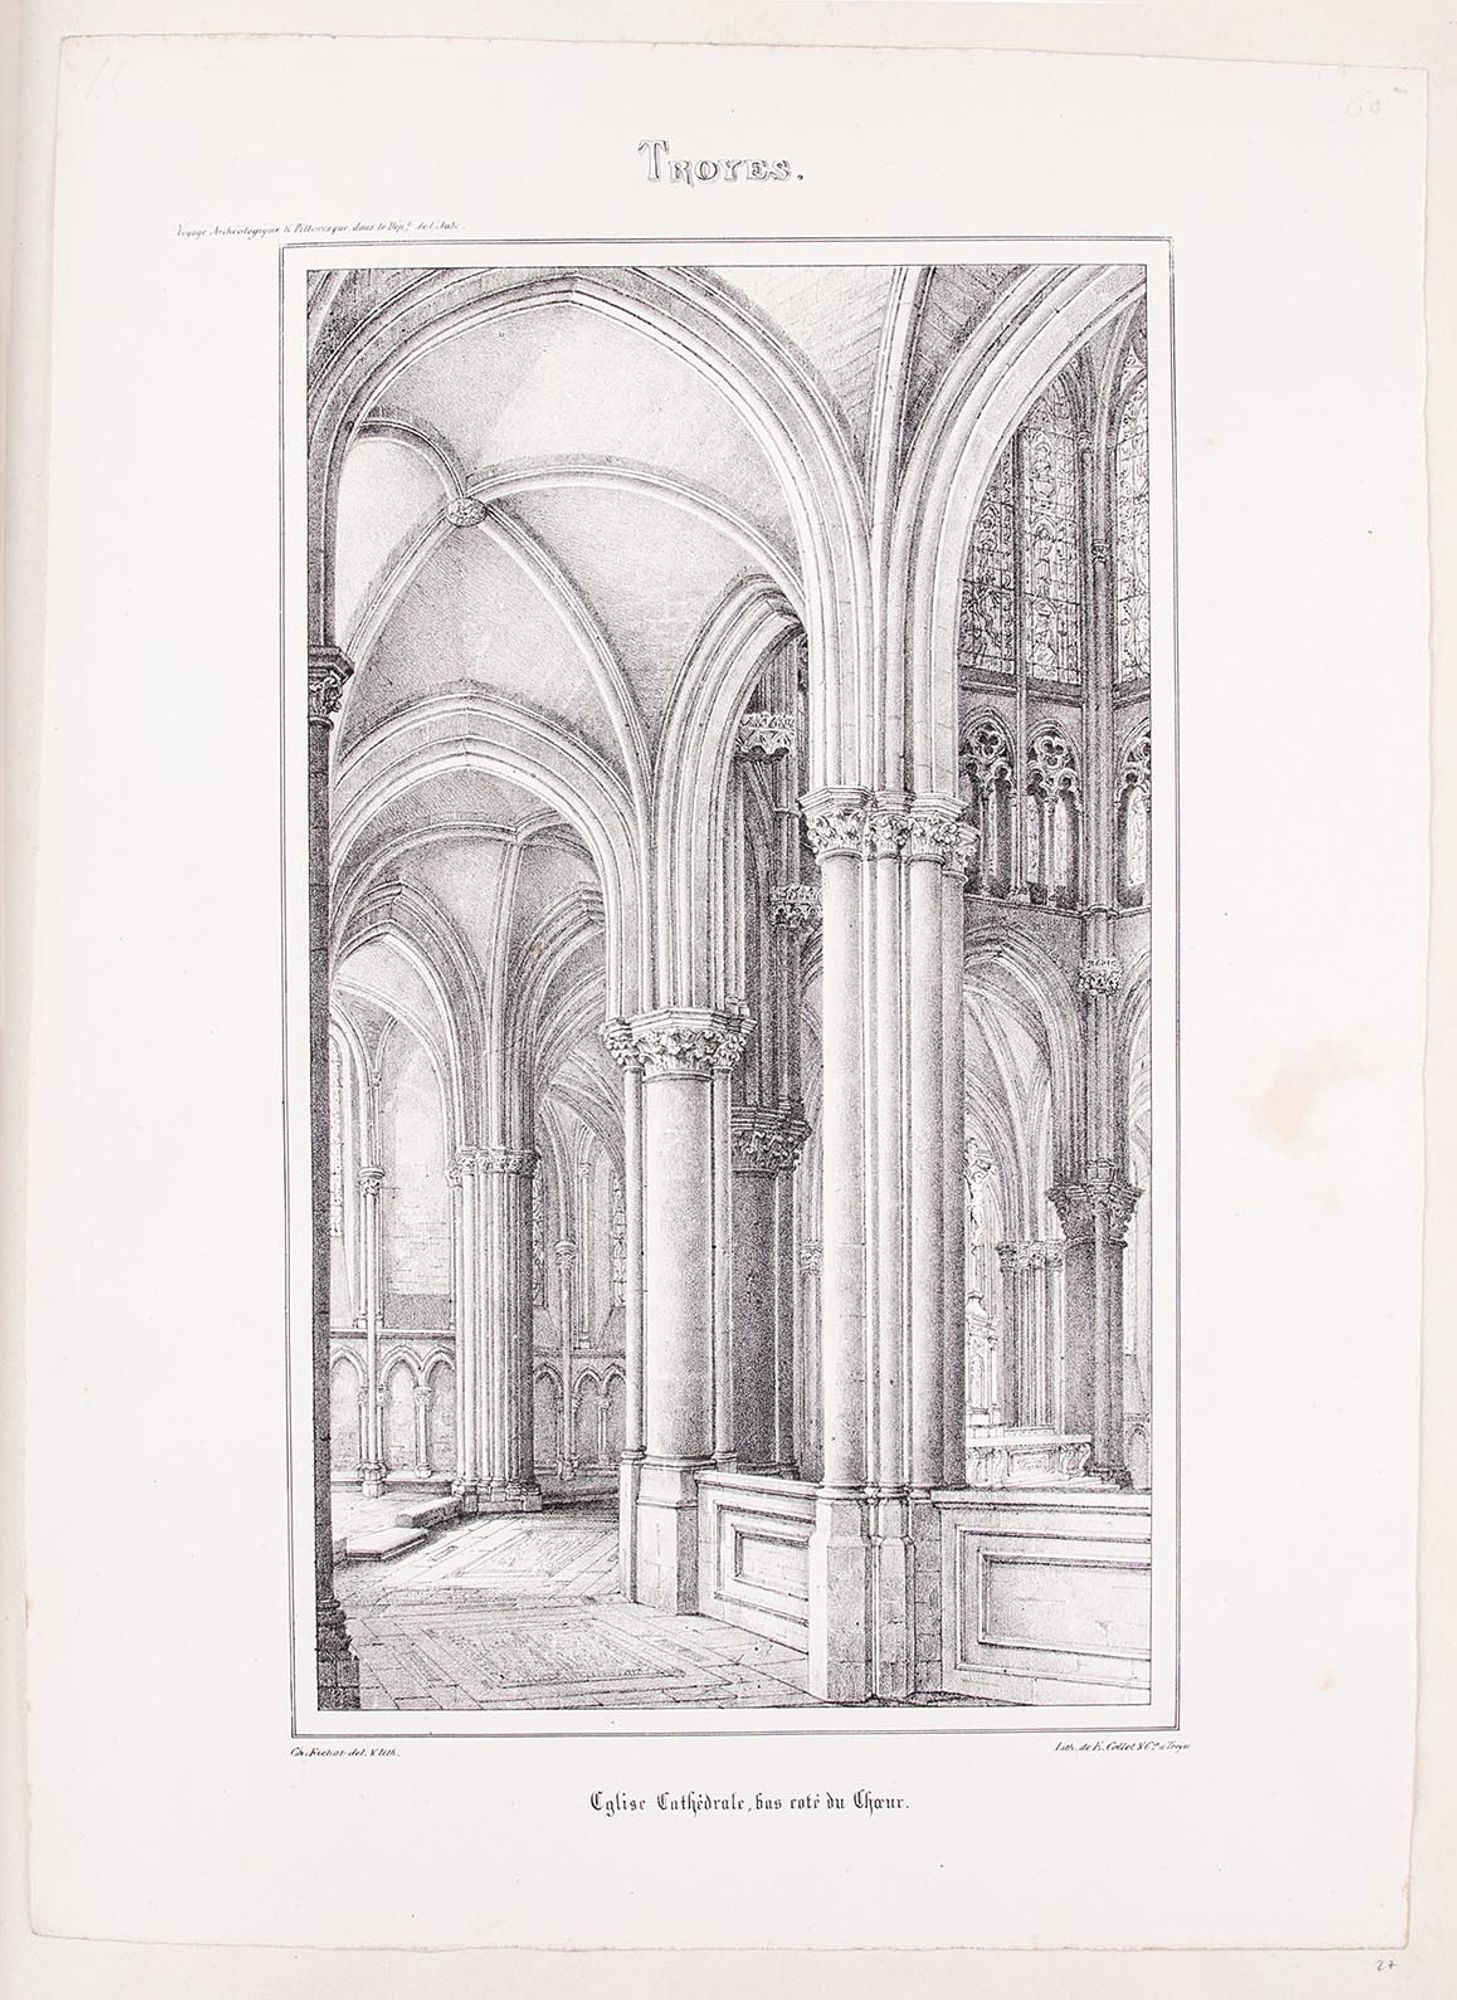 Lithographie. « Eglise cathédrale, bas coté du chœur », extrait du Voyage Archéologique et Pittoresque dans le Département de l'Aube et dans l'Ancien Diocèse de Troyes, Troyes, 1837.